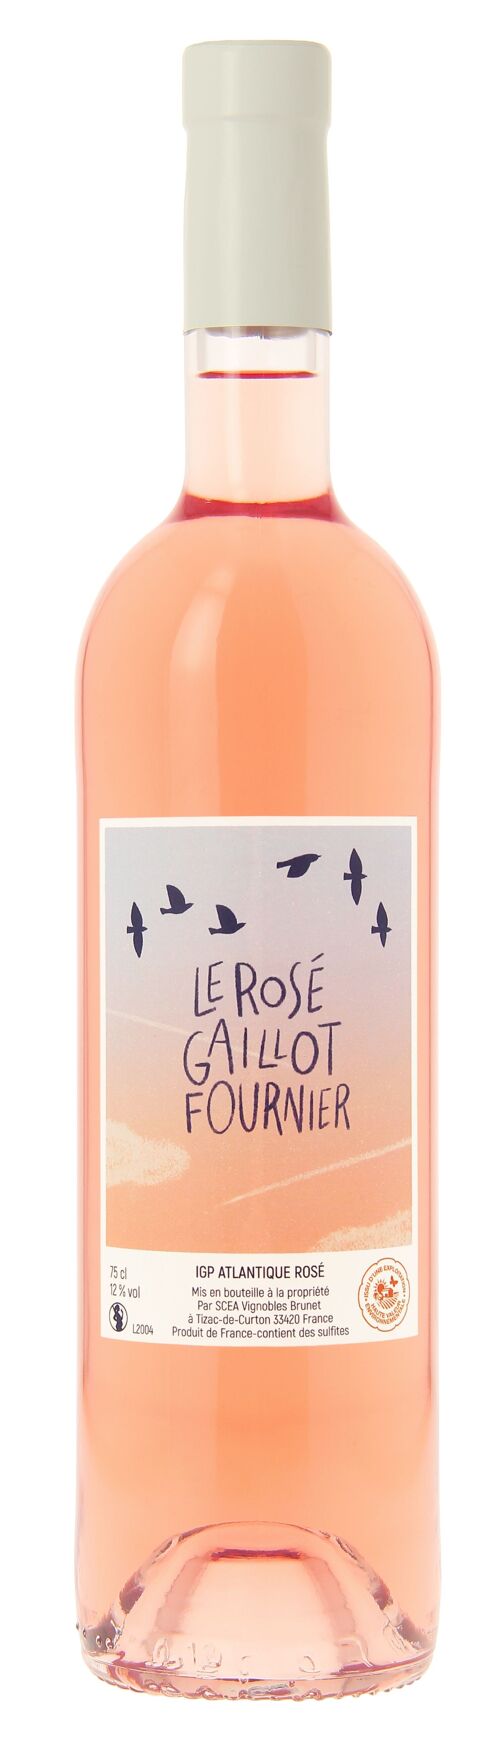 Le rosé Gaillot-Fournier